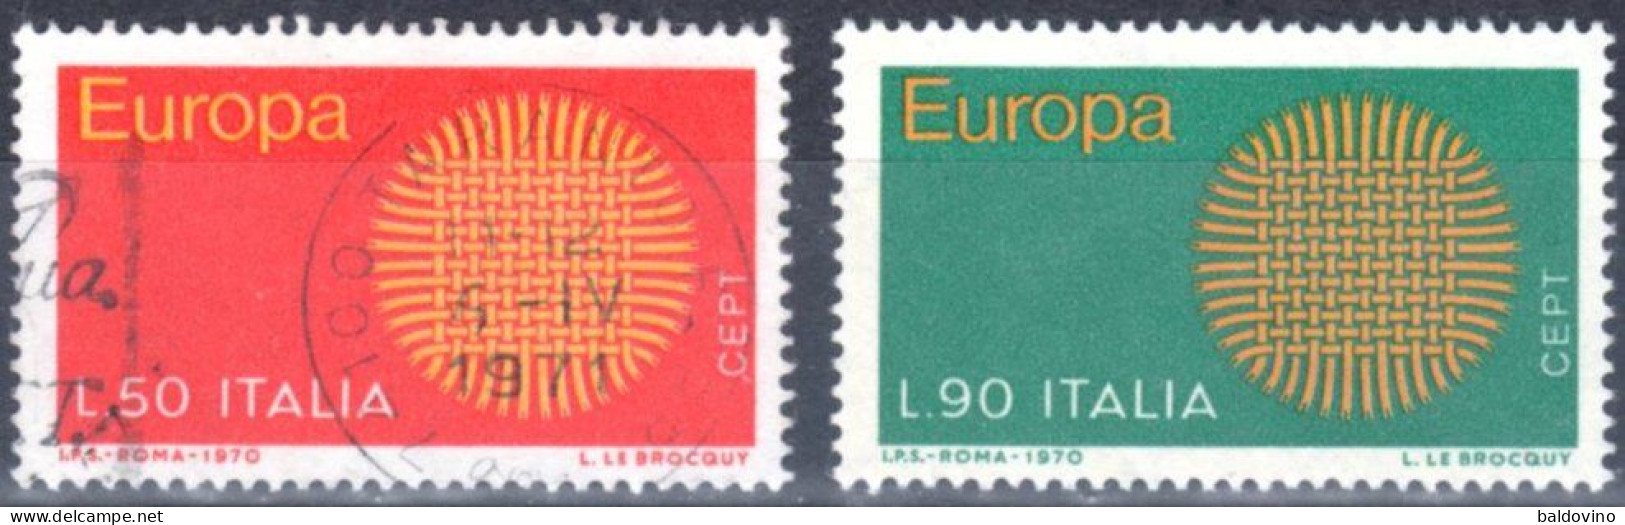 Italia 1970 Lotto 26 Valori (vedi Descrizione) - 1961-70: Afgestempeld